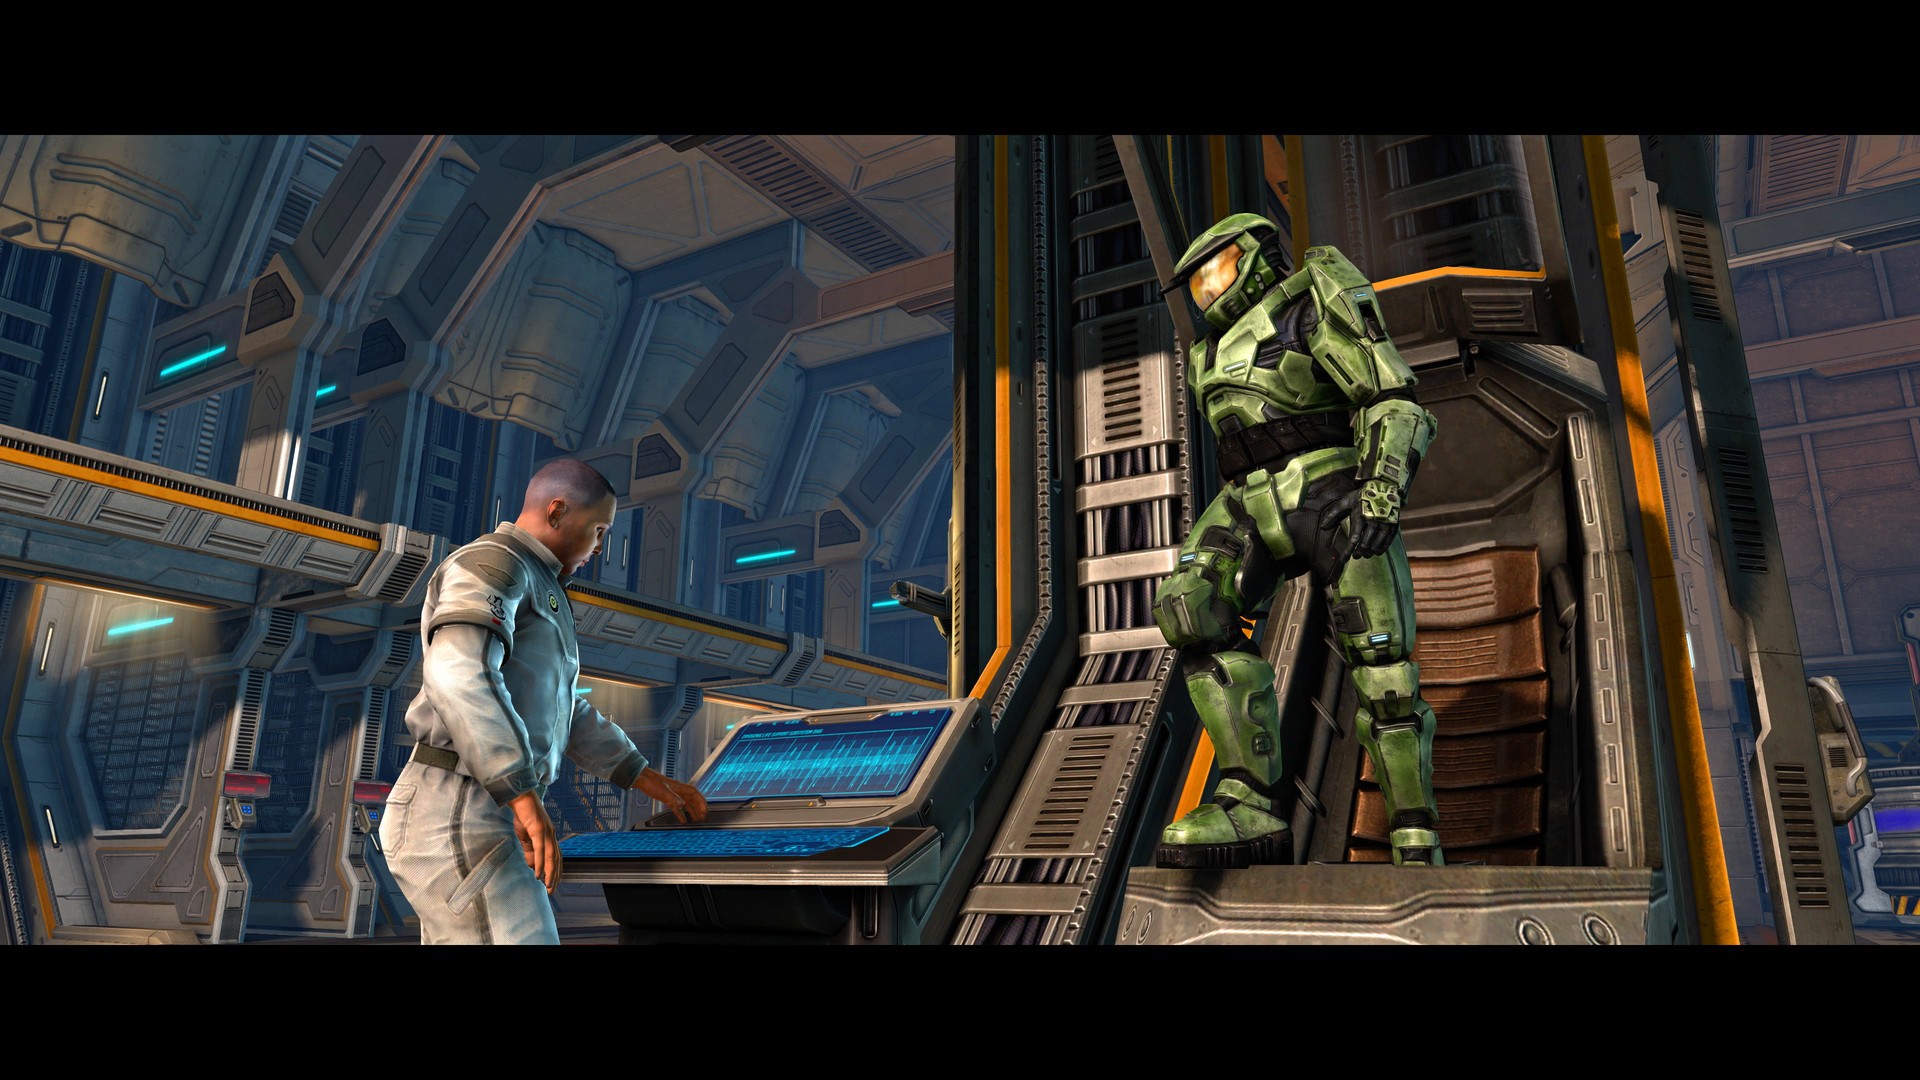 Halo: Master Chief Collection vs Original [PC]